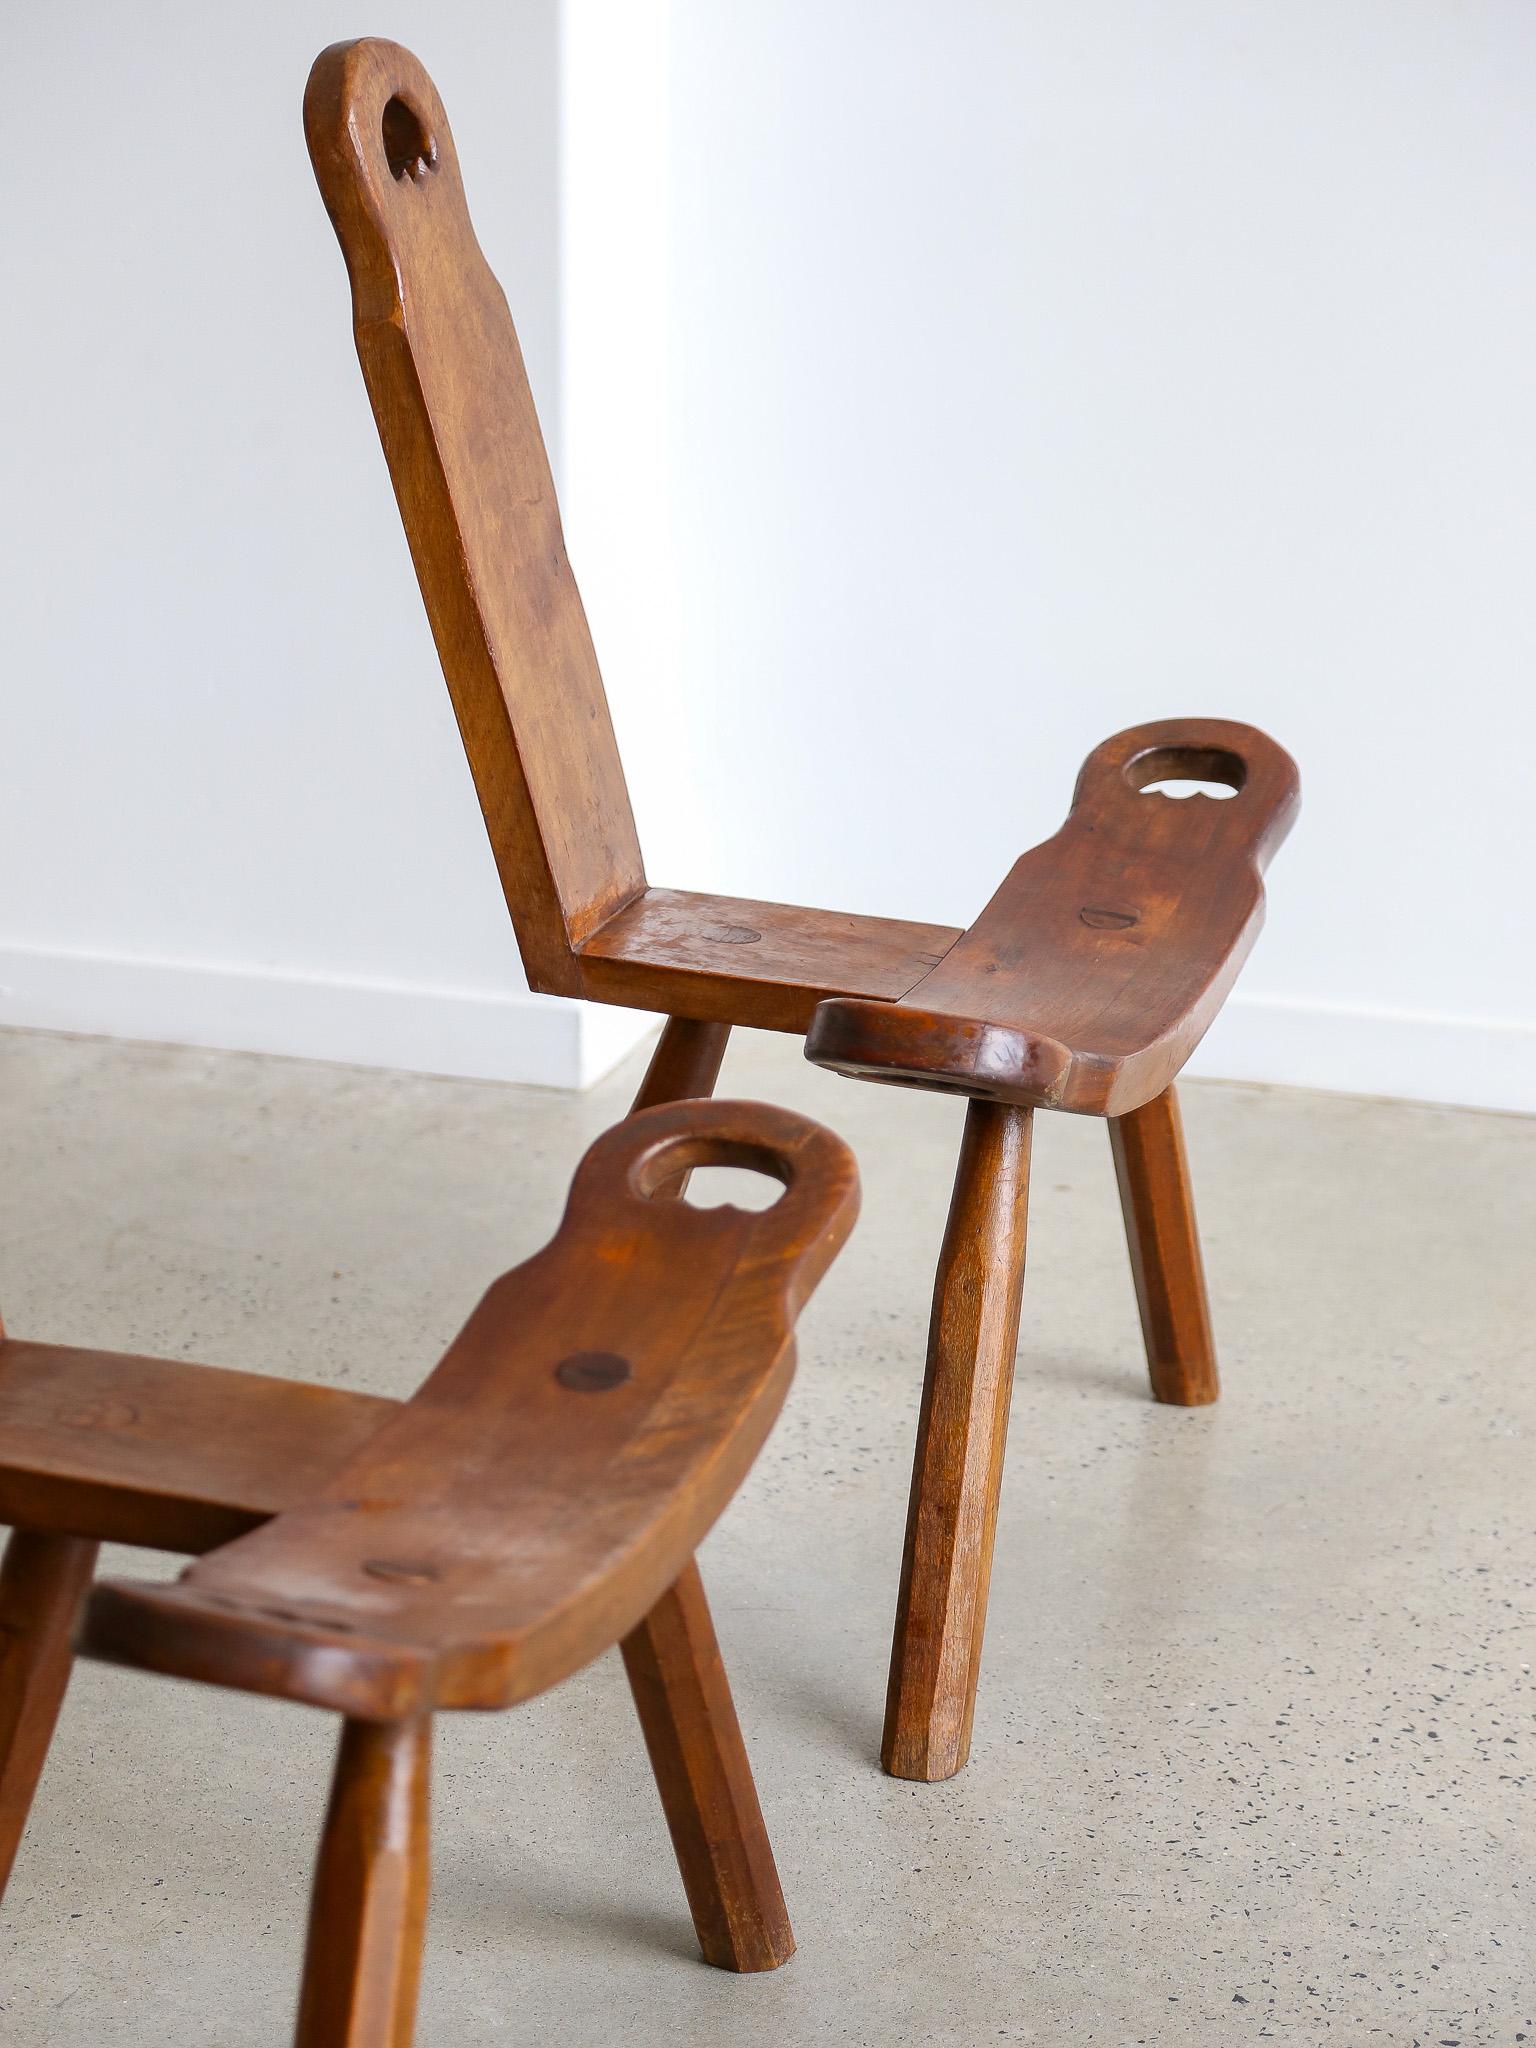 Présentation de l'exquise chaise tripode sculpturale espagnole brutaliste du milieu du siècle de 1950 Vous souhaitez ajouter une touche de sophistication unique à votre intérieur ? Ne cherchez pas plus loin que la chaise tripode sculpturale